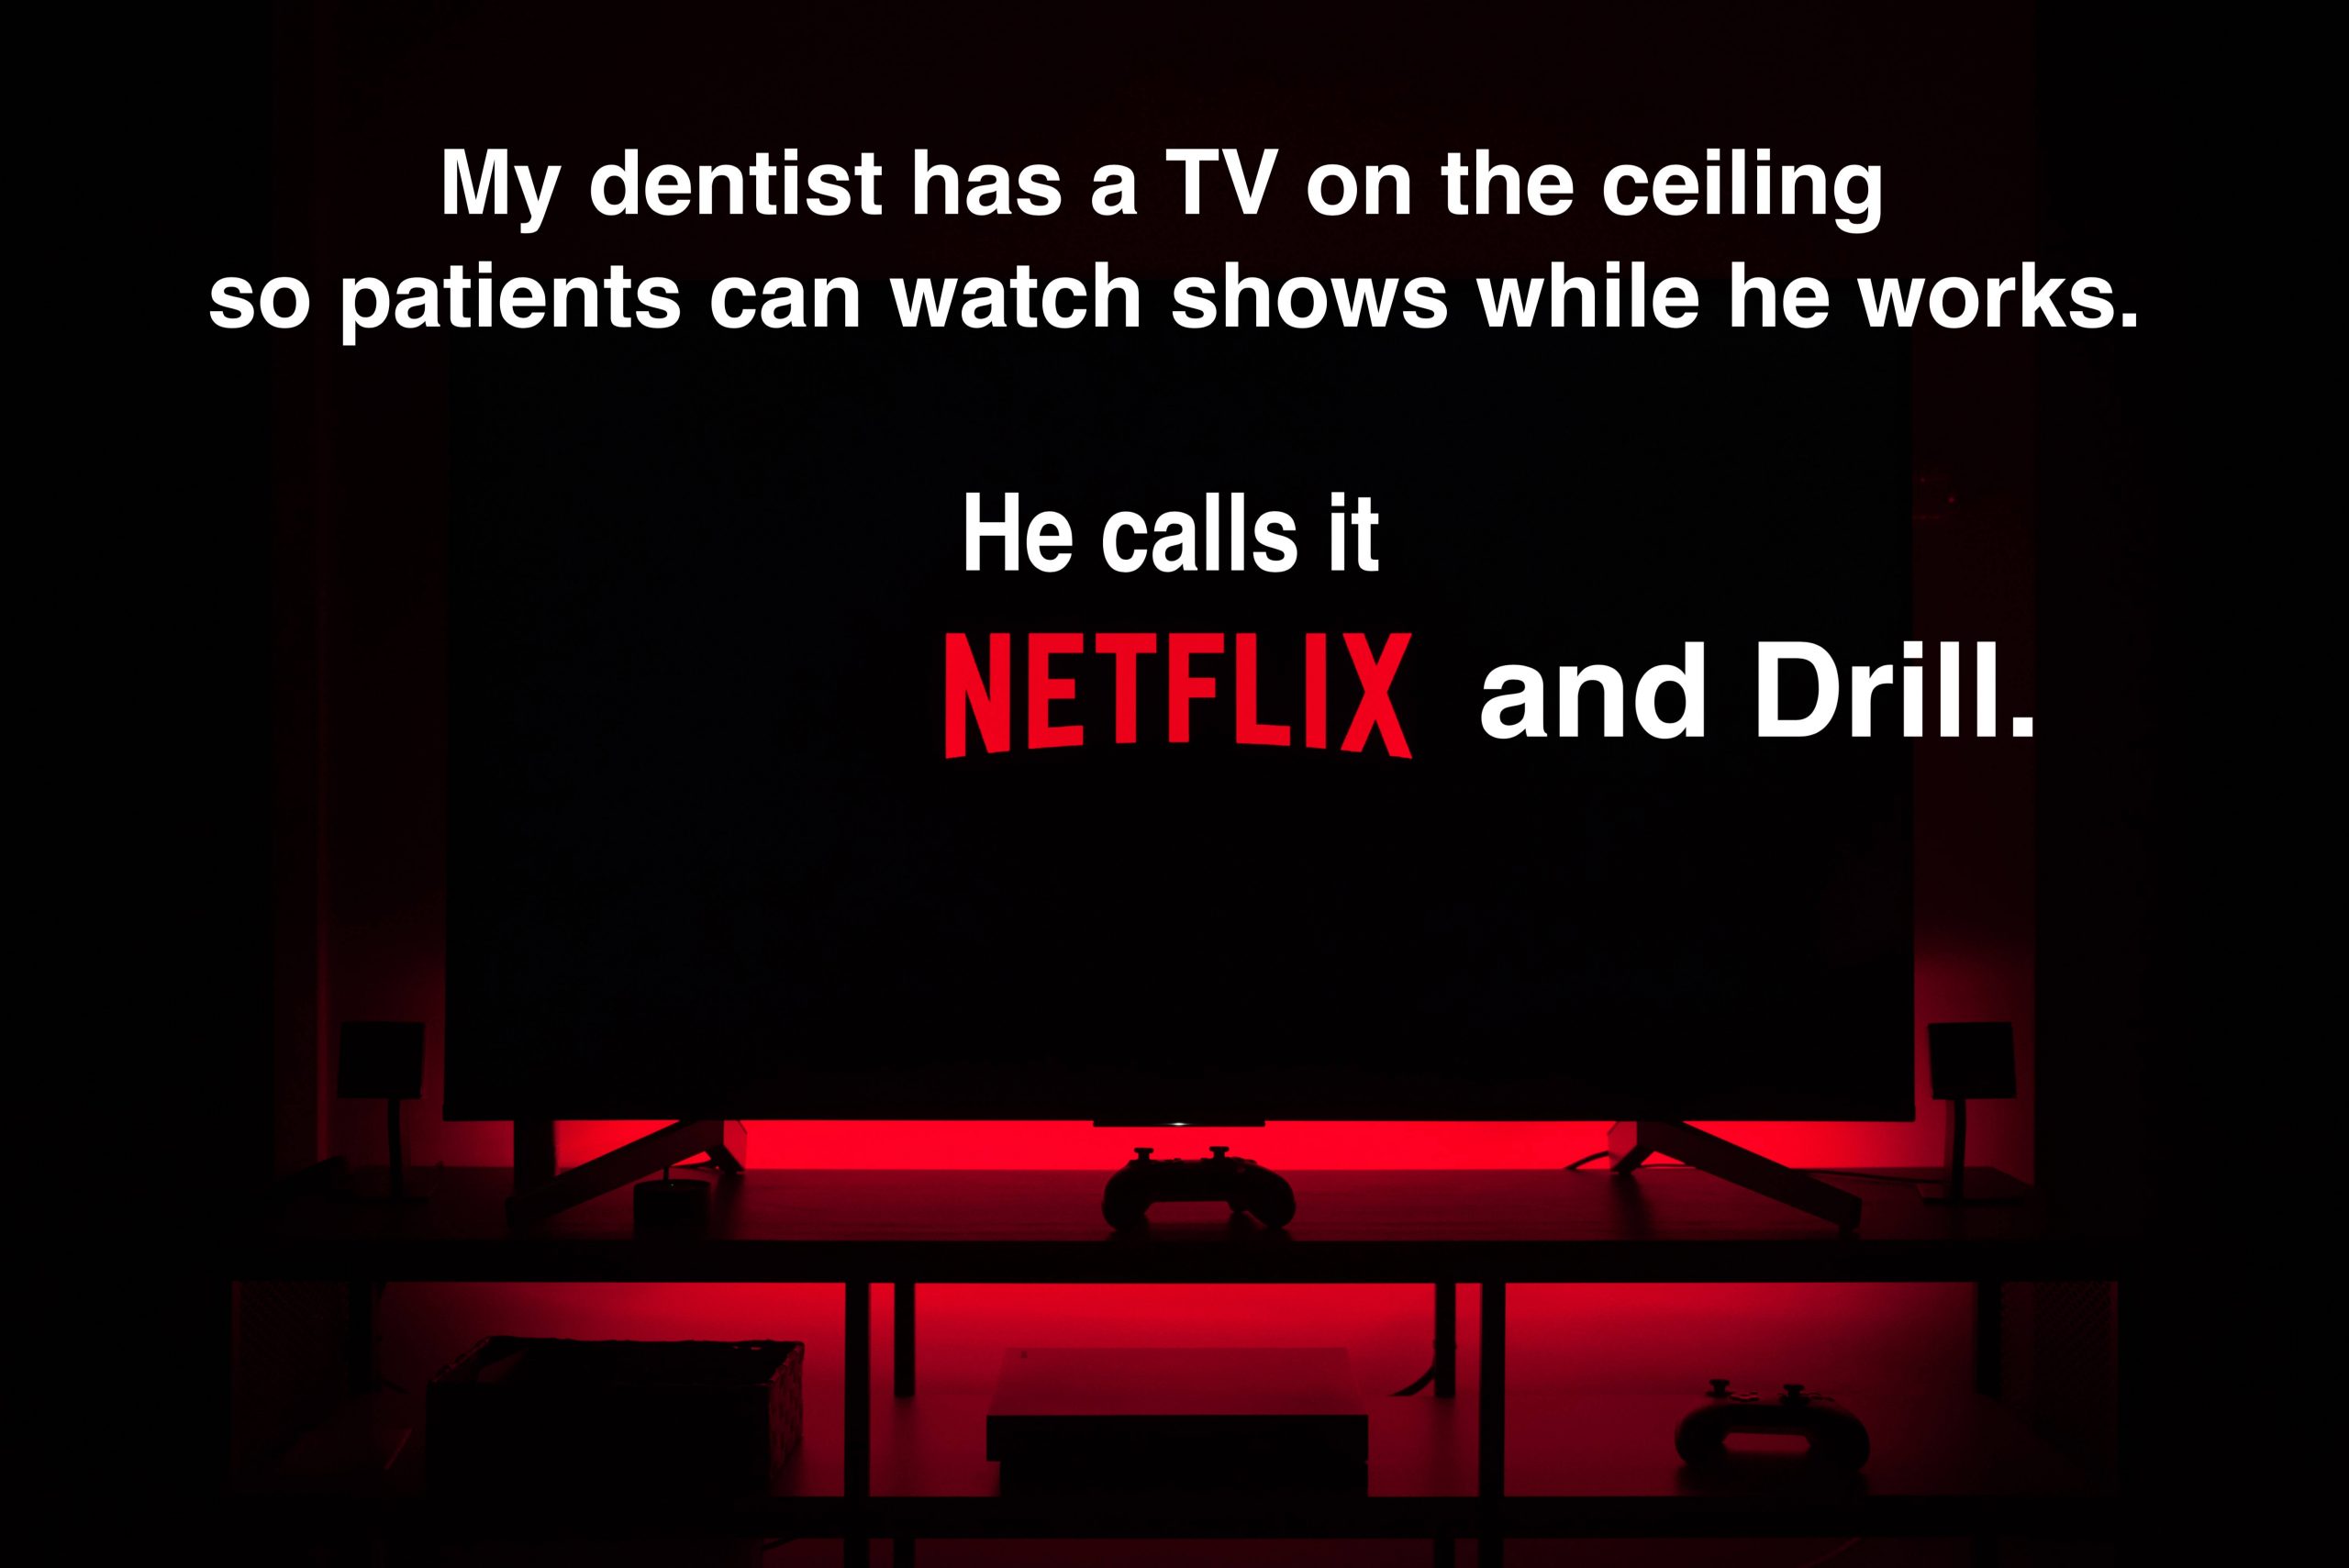 Dentist netflix and drill pun